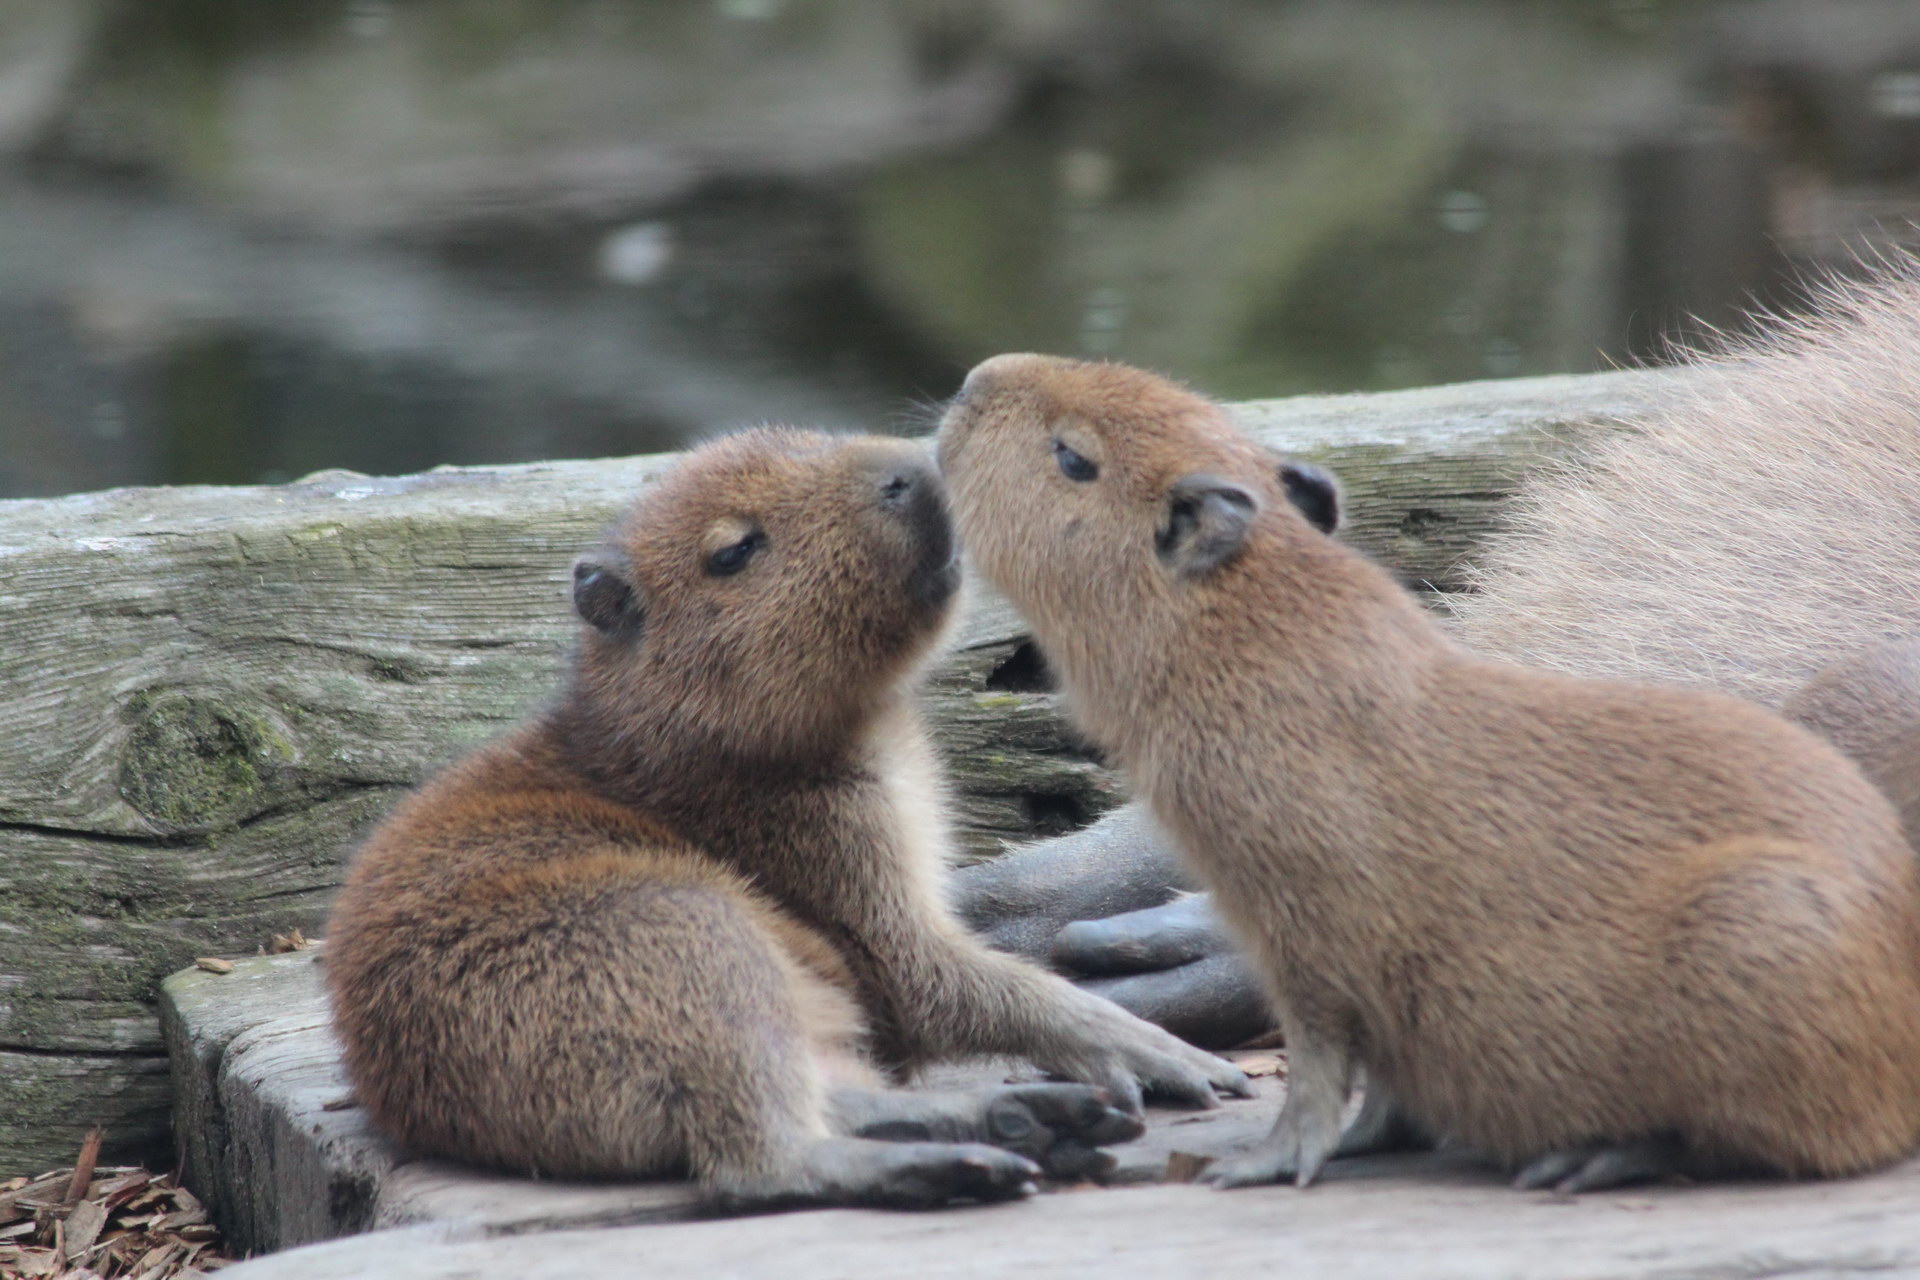 Young capybaras